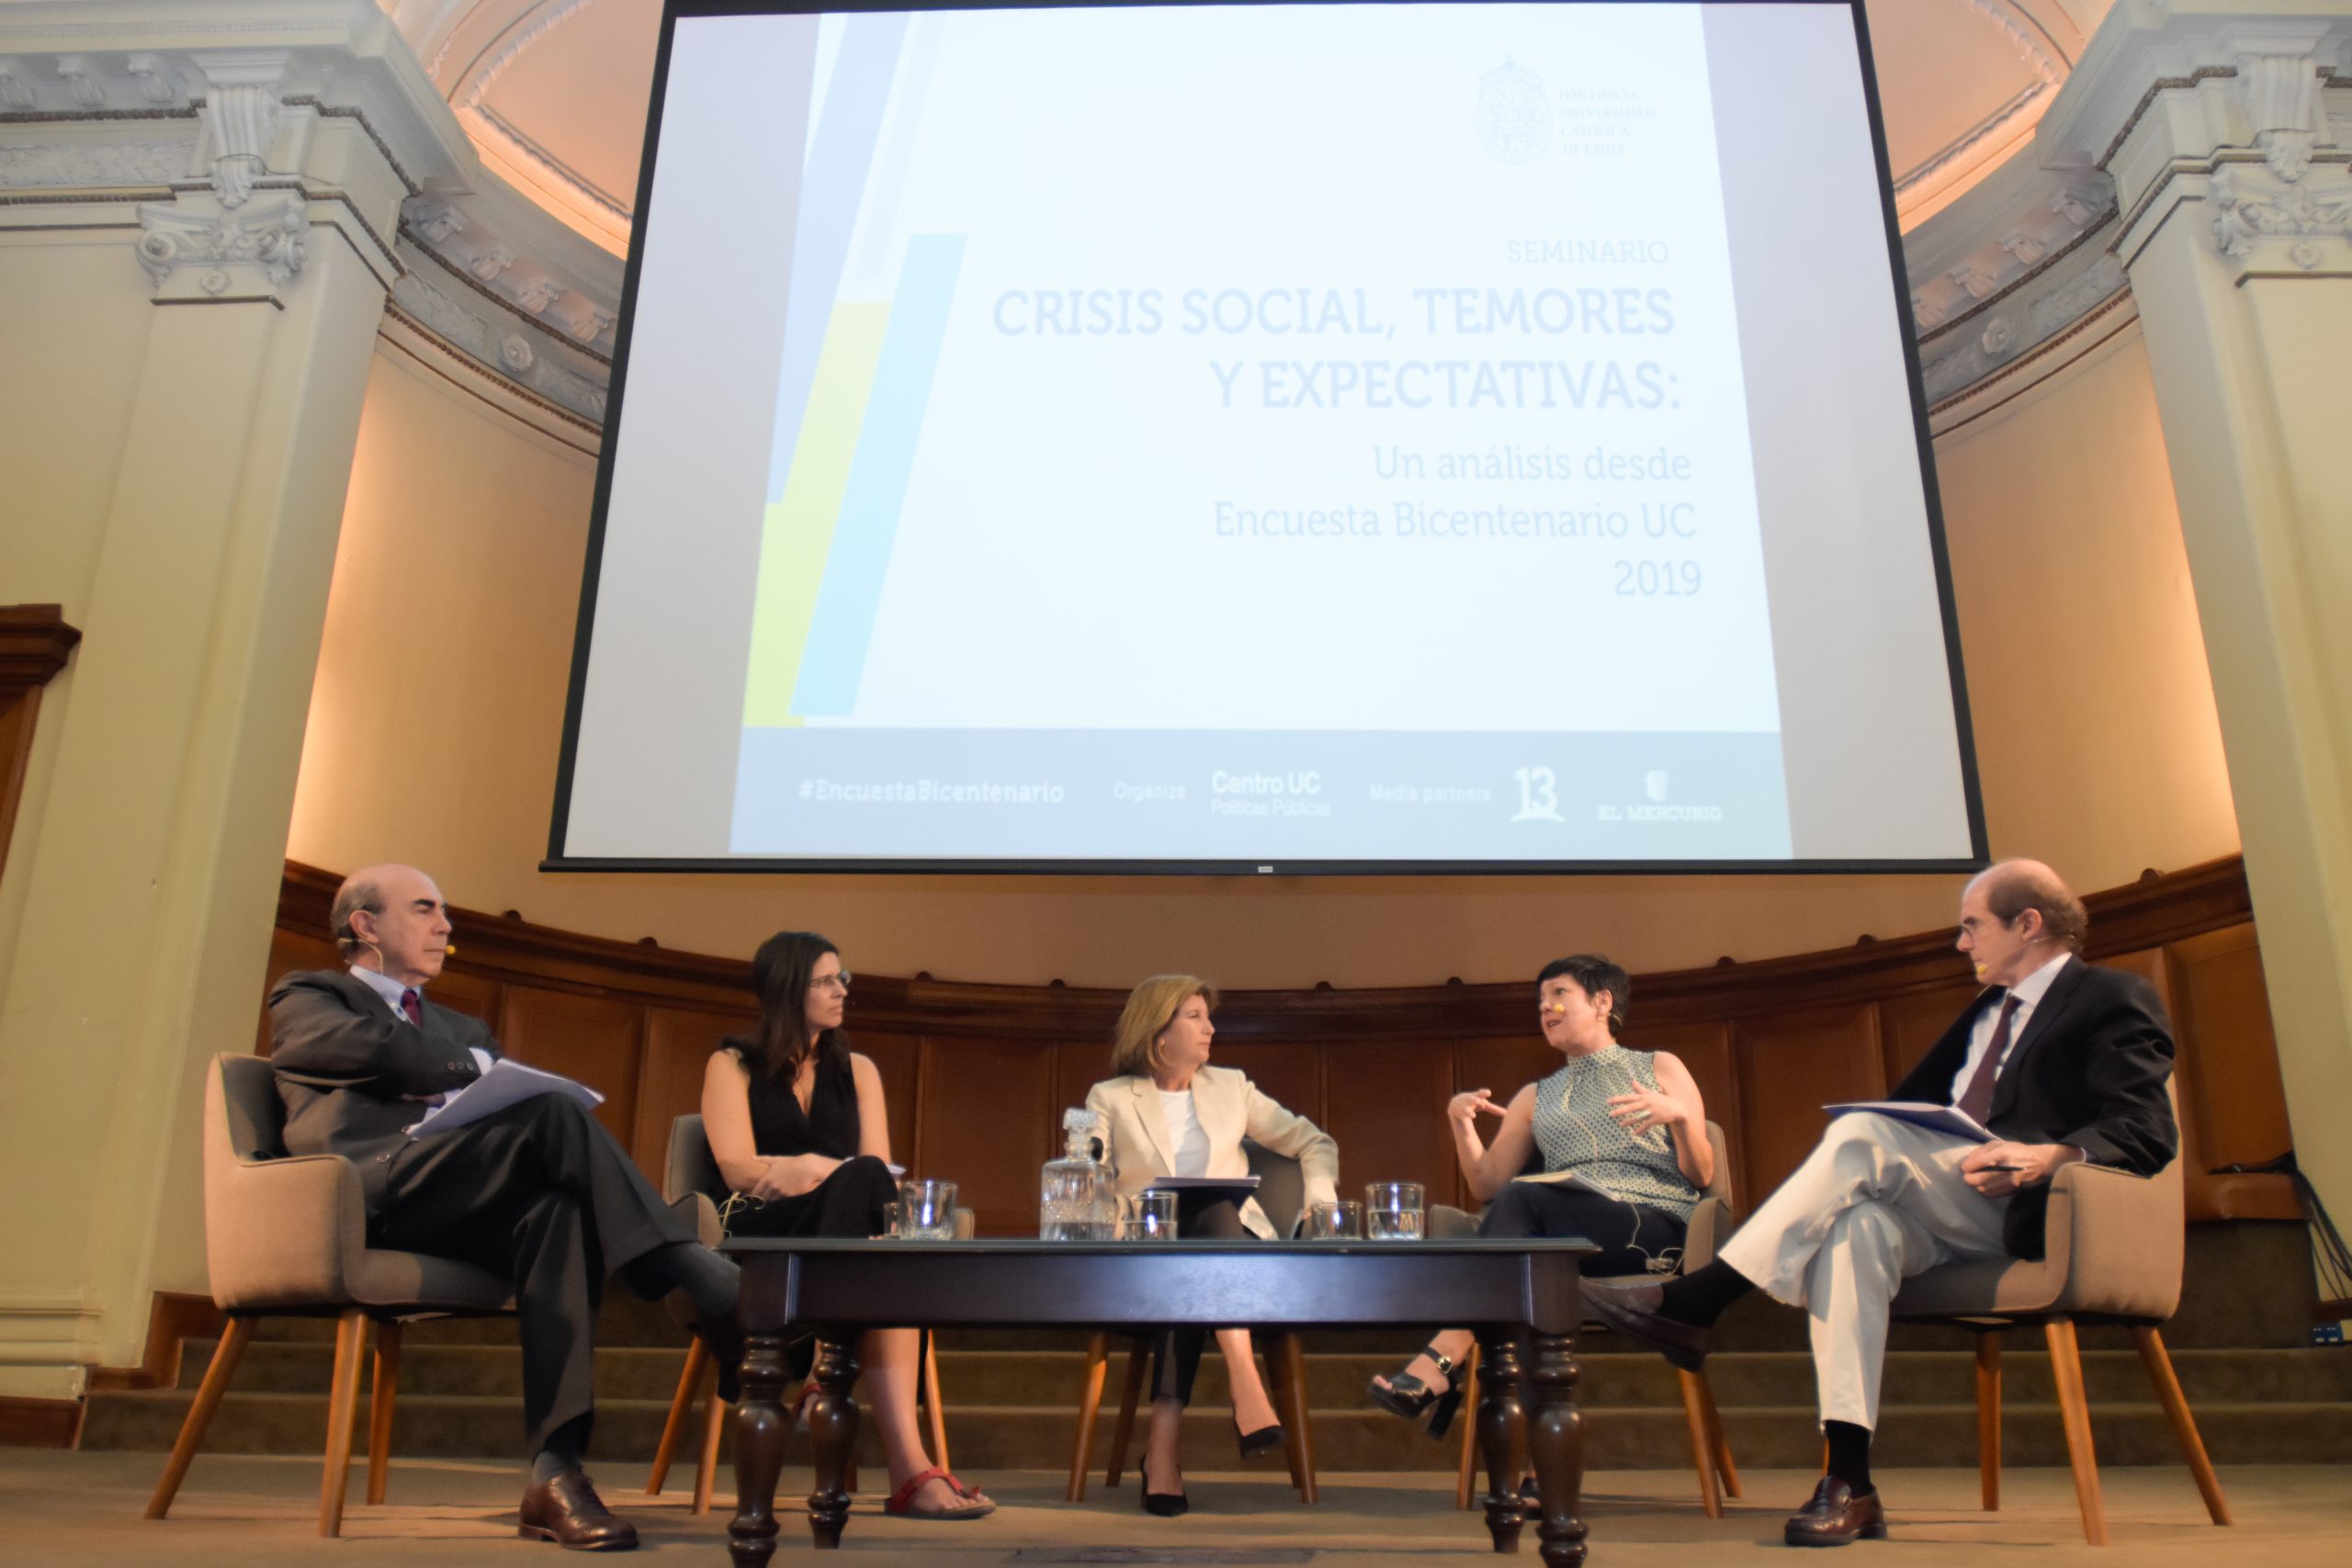 Encuesta Bicentenario UC 2019: los datos que anticipaban la crisis social